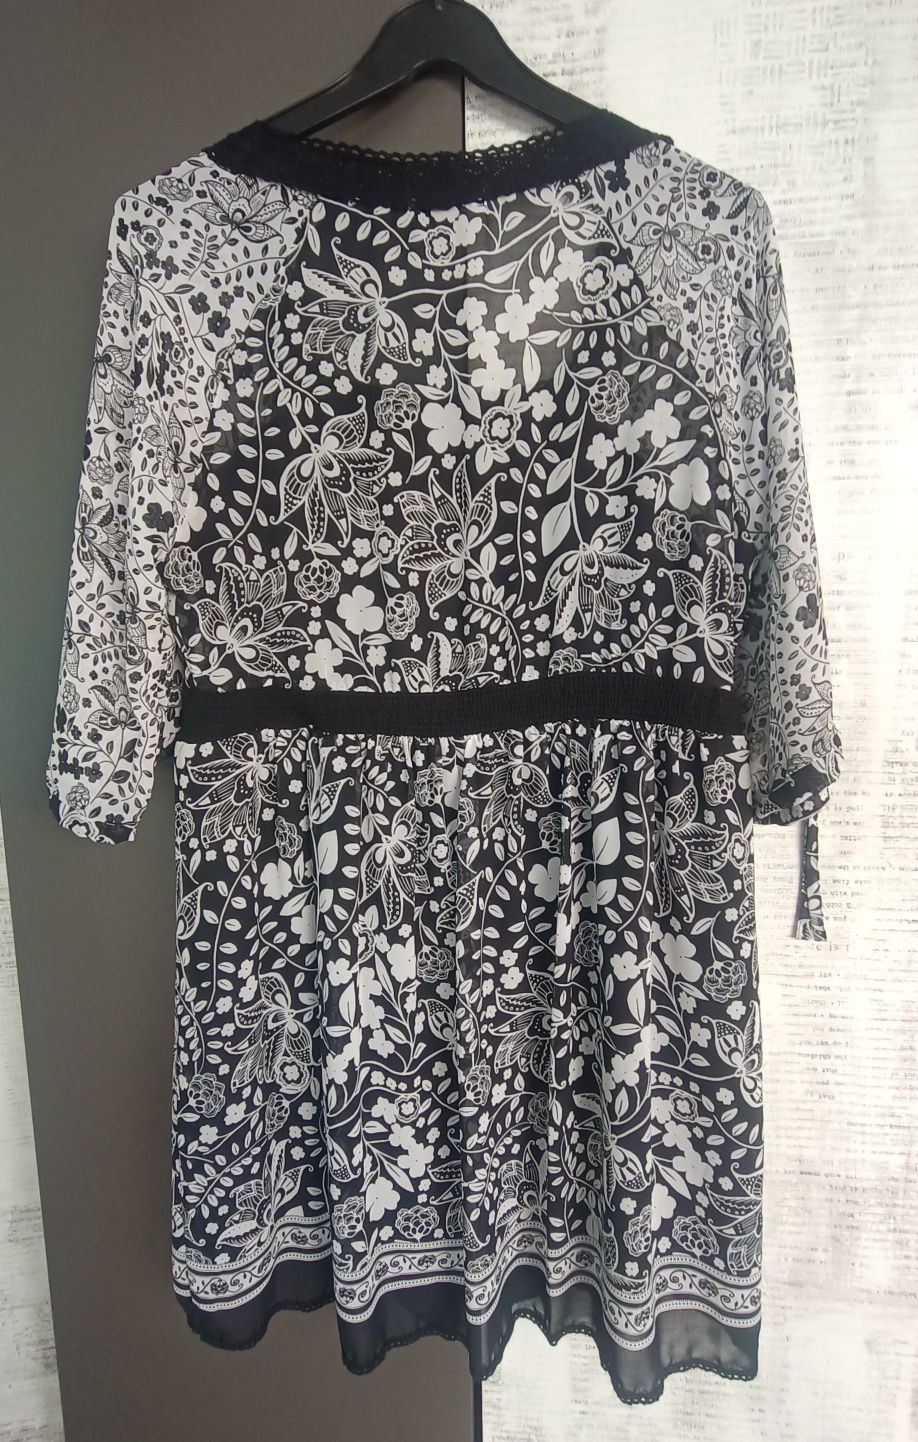 Zwiewna czarno-biała sukienka letnia, Yessica, rozmiar 44